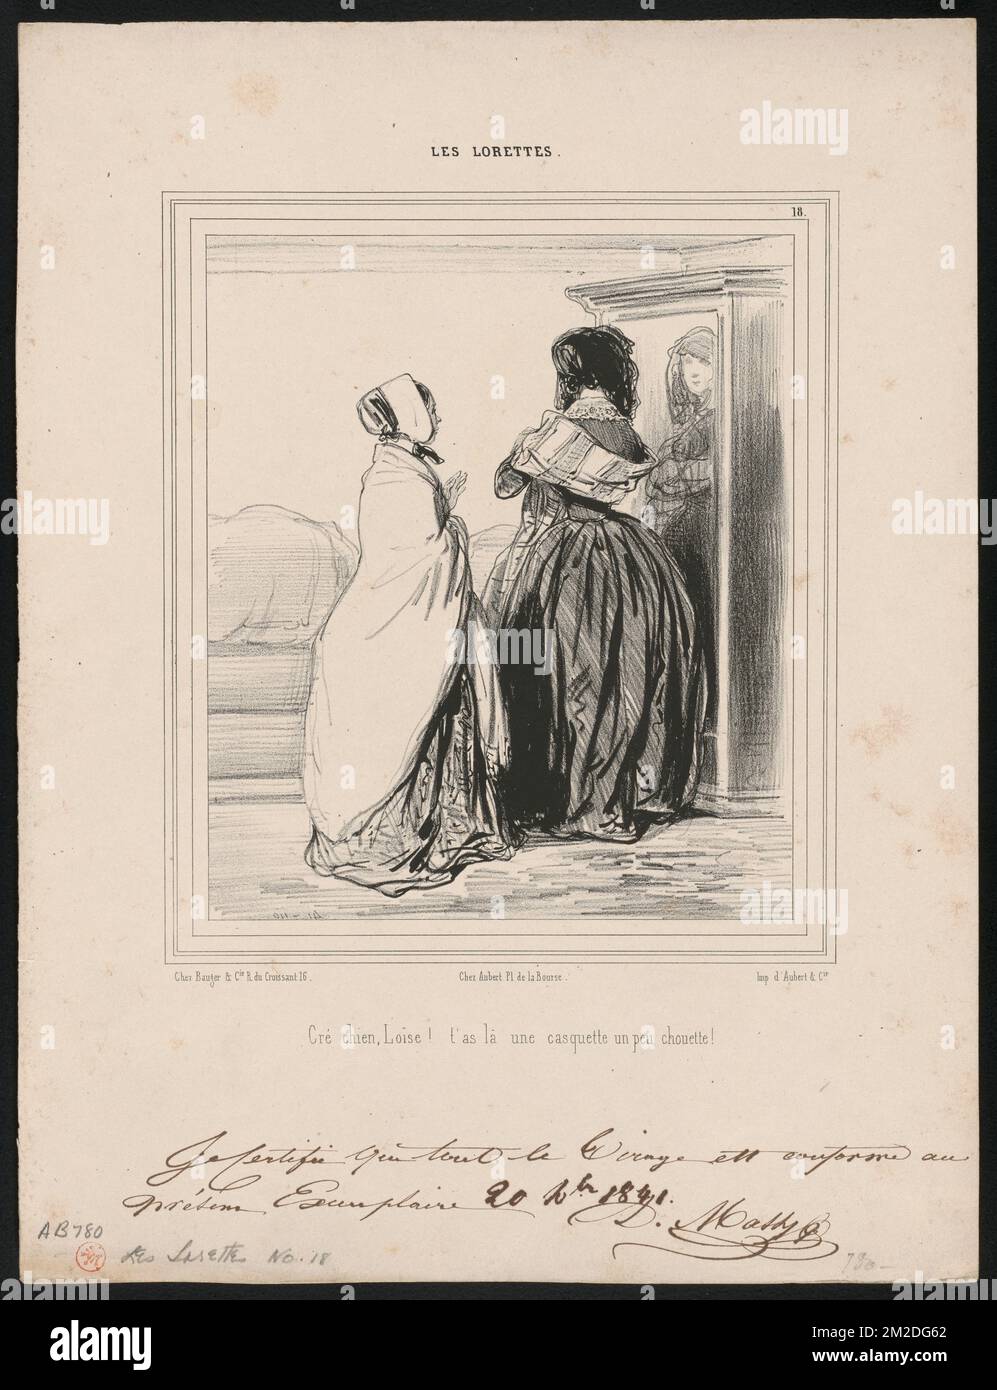 Cré chien Loïse! t'as lá une casquette un peu chouette! ,. Paul Gavarni  (1804-1866). Lithographs and Other Works Stock Photo - Alamy